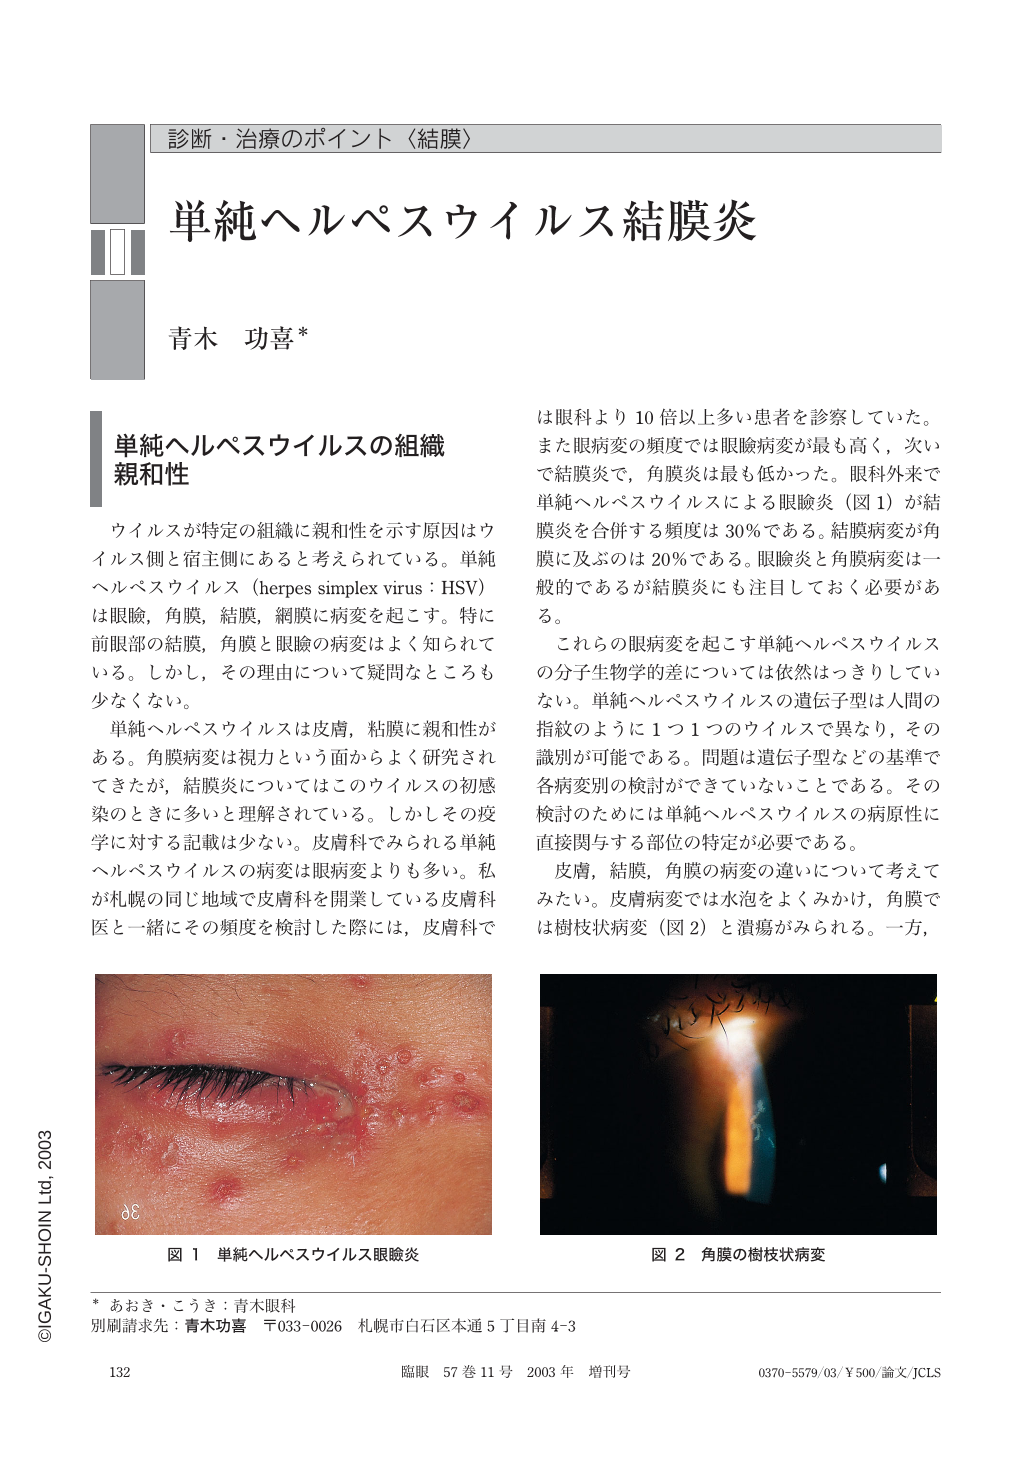 単純ヘルペスウイルス結膜炎 (臨床眼科 57巻11号) | 医書.jp